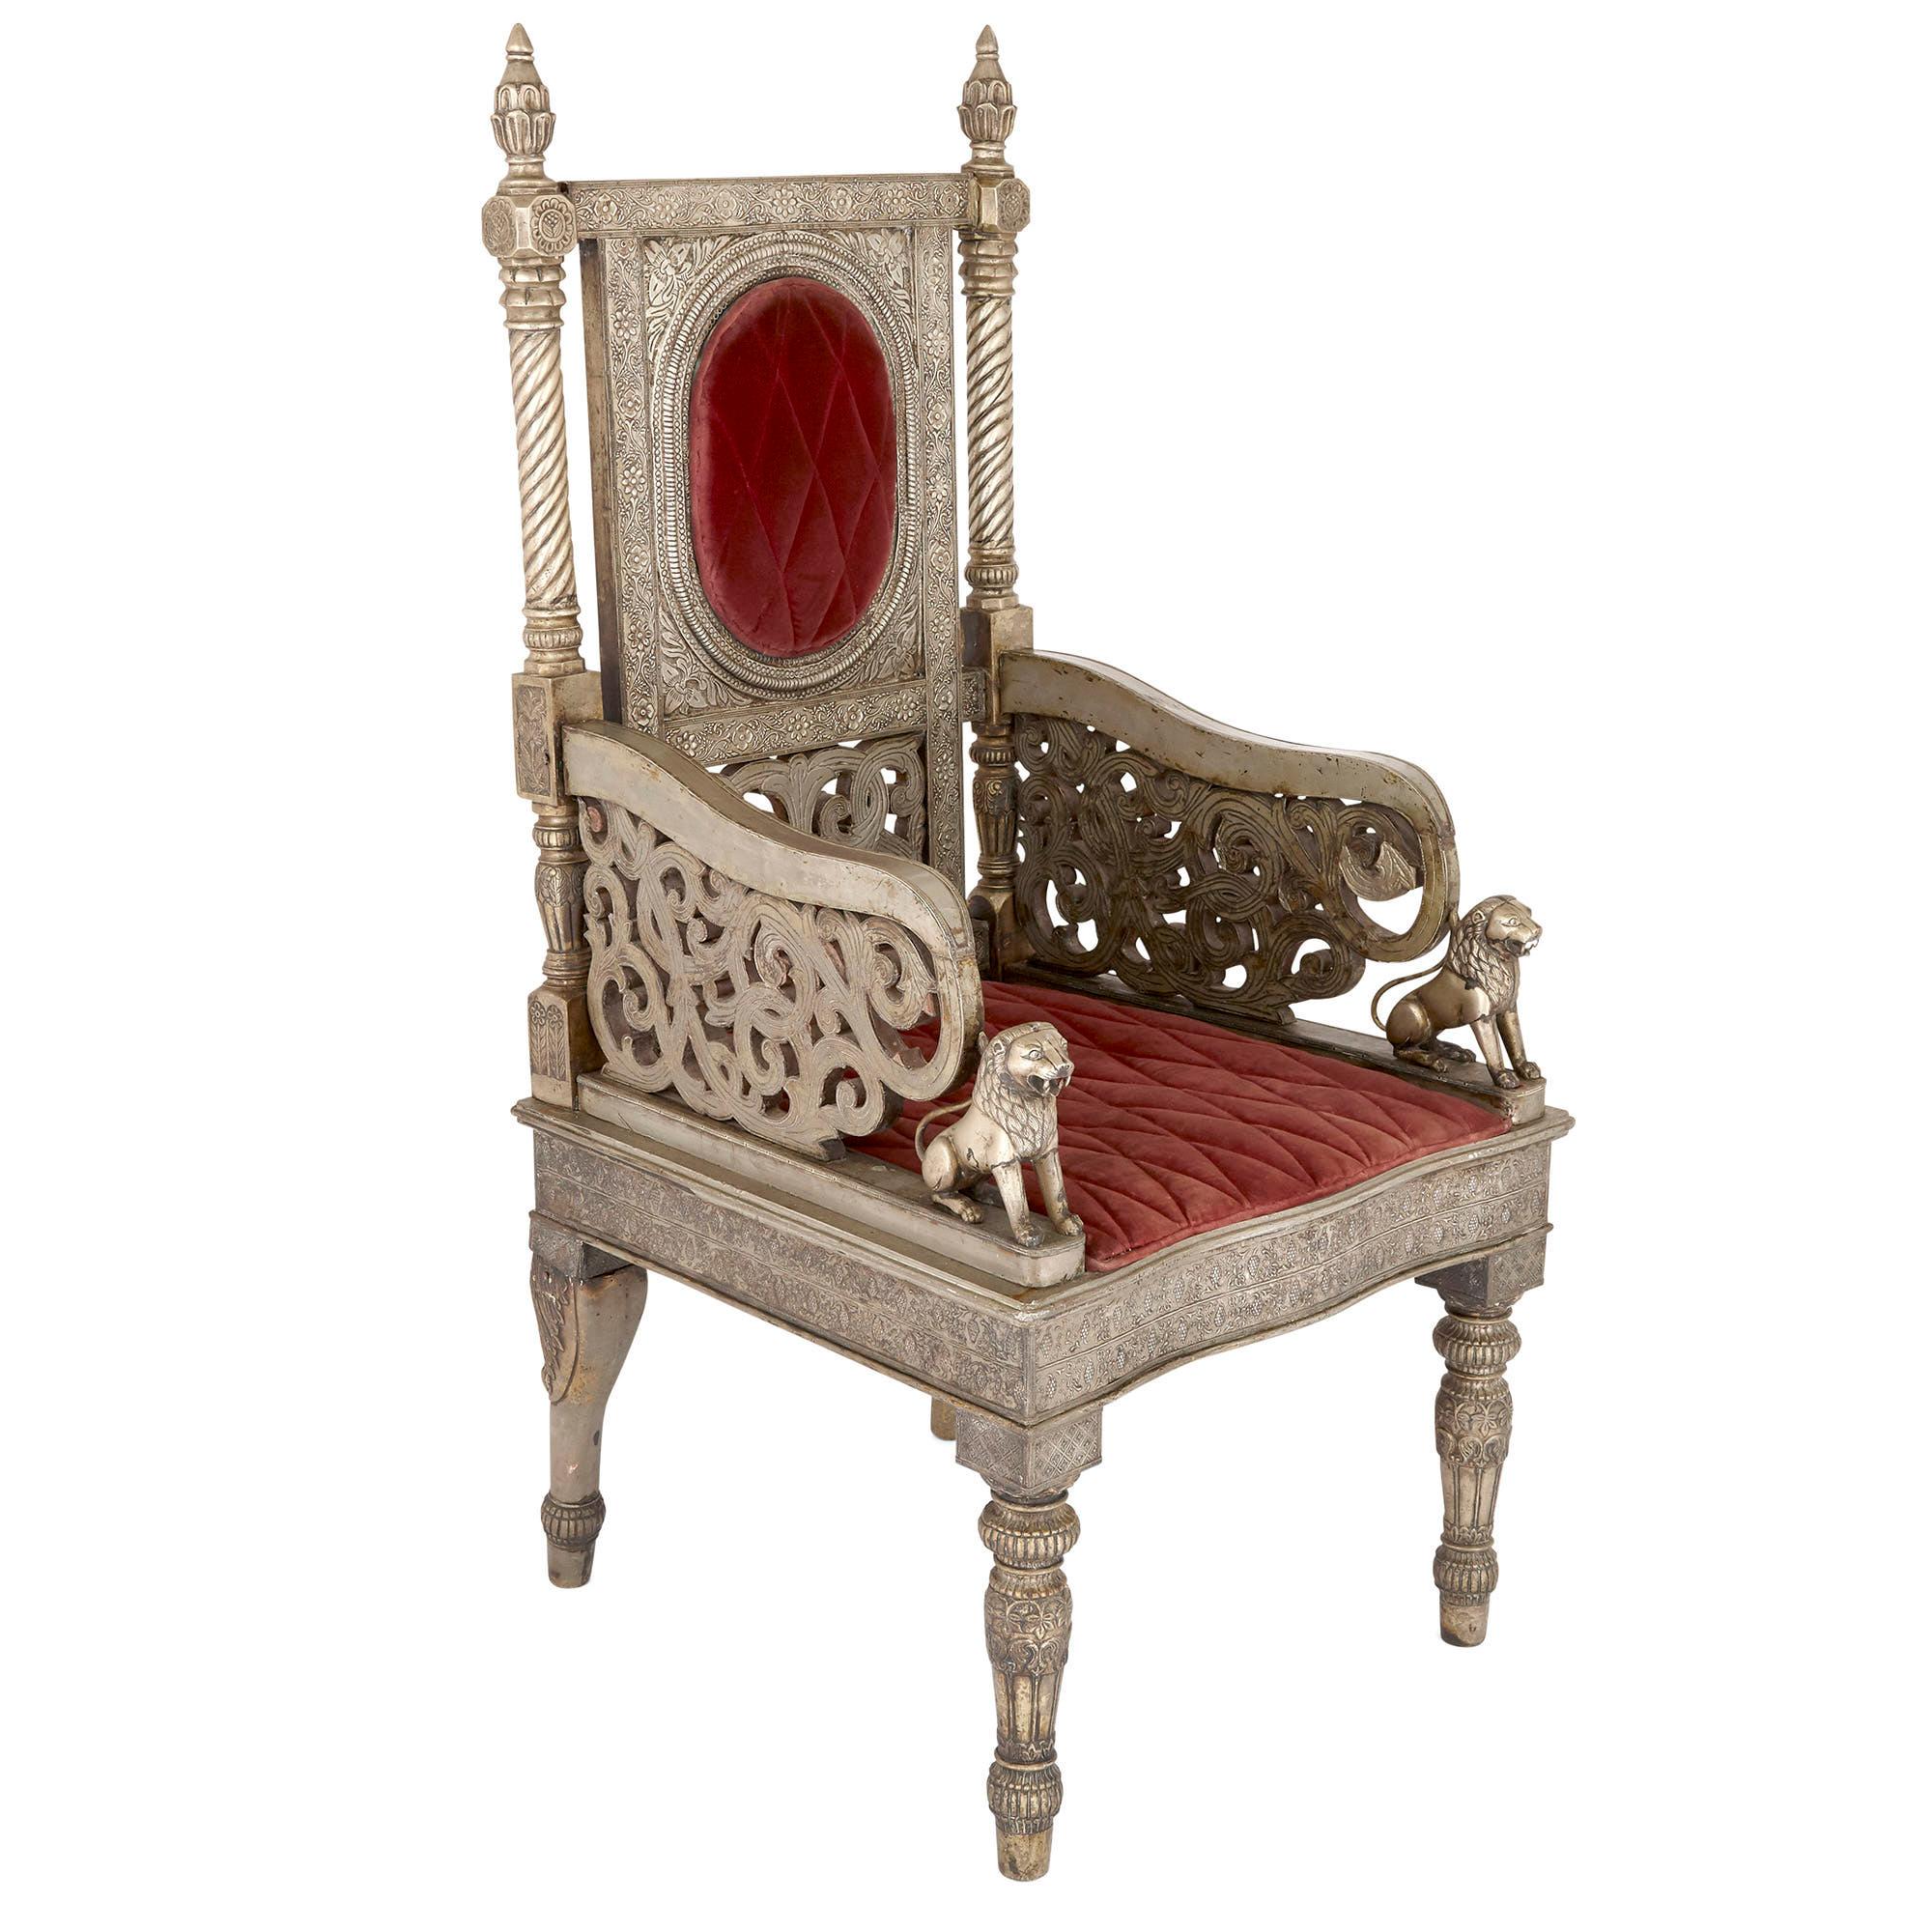 Fauteuil trône en métal argenté et velours rouge
Indien, vers 1880
Mesures : Hauteur 138 cm, largeur 66 cm, profondeur 66 cm

Ce beau fauteuil trône indien aurait été populaire en Europe comme en Inde au XIXe siècle. Le cadre détaillé de la